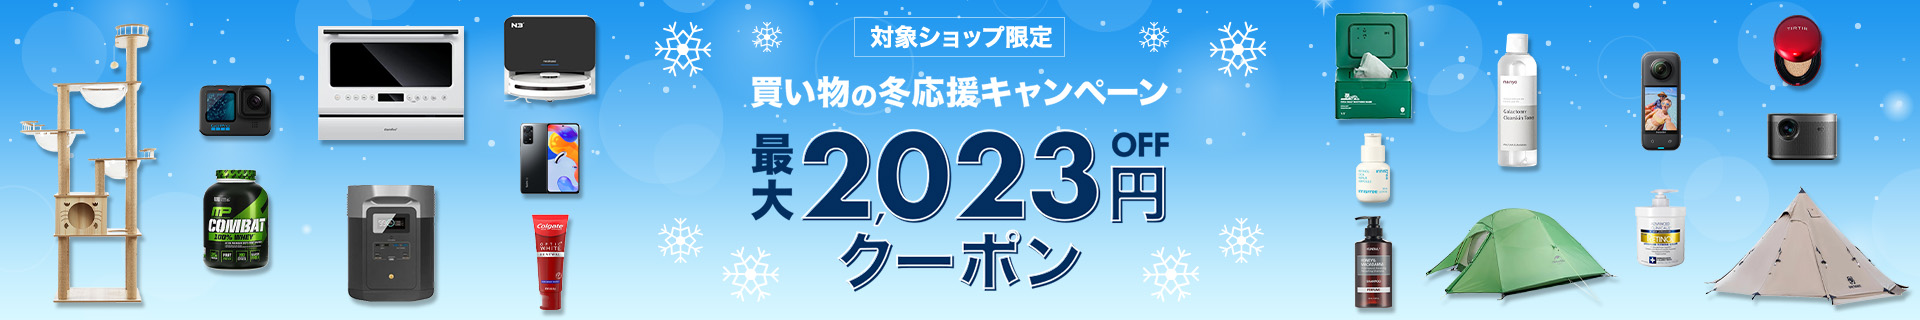 楽天海外通販 最大2,023円OFFクーポンキャンペーン